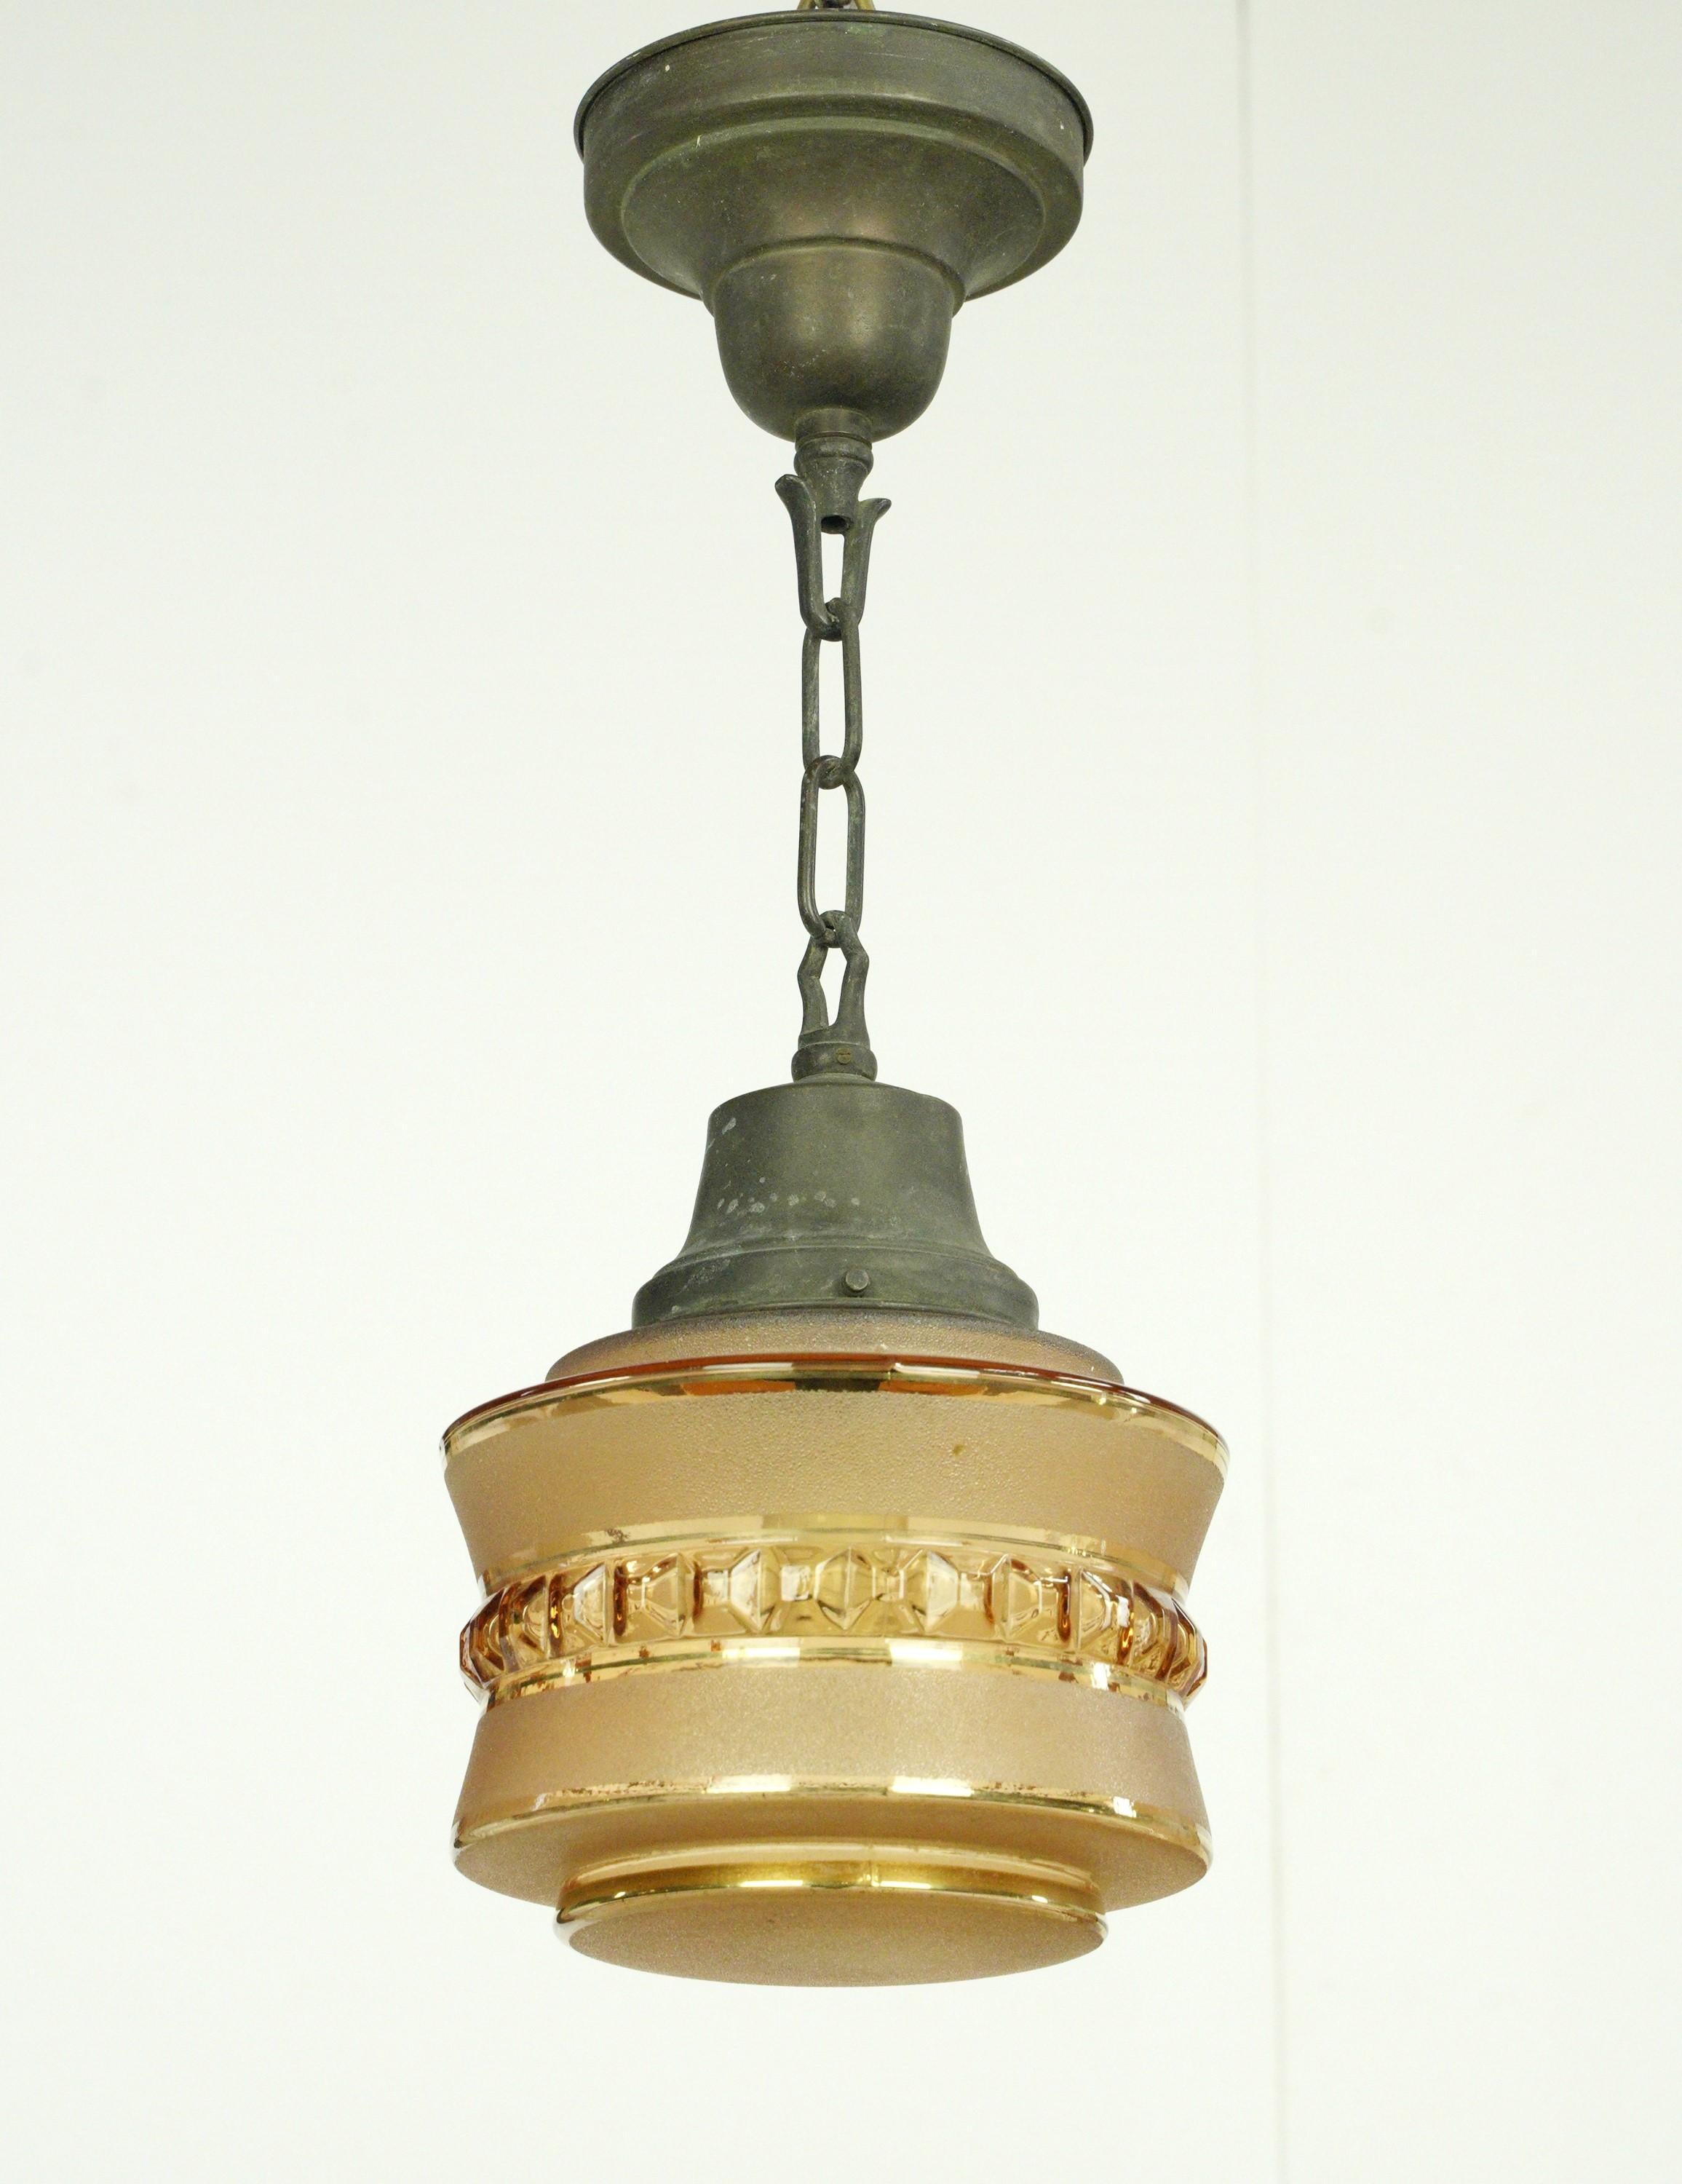 Lampe suspendue avec un globe texturé de couleur tan et une chaîne en bronze. Elle nécessite une ampoule standard à culot moyen. Le prix comprend la restauration, le nettoyage et le recâblage. Bon état avec une usure appropriée due à l'âge. Un